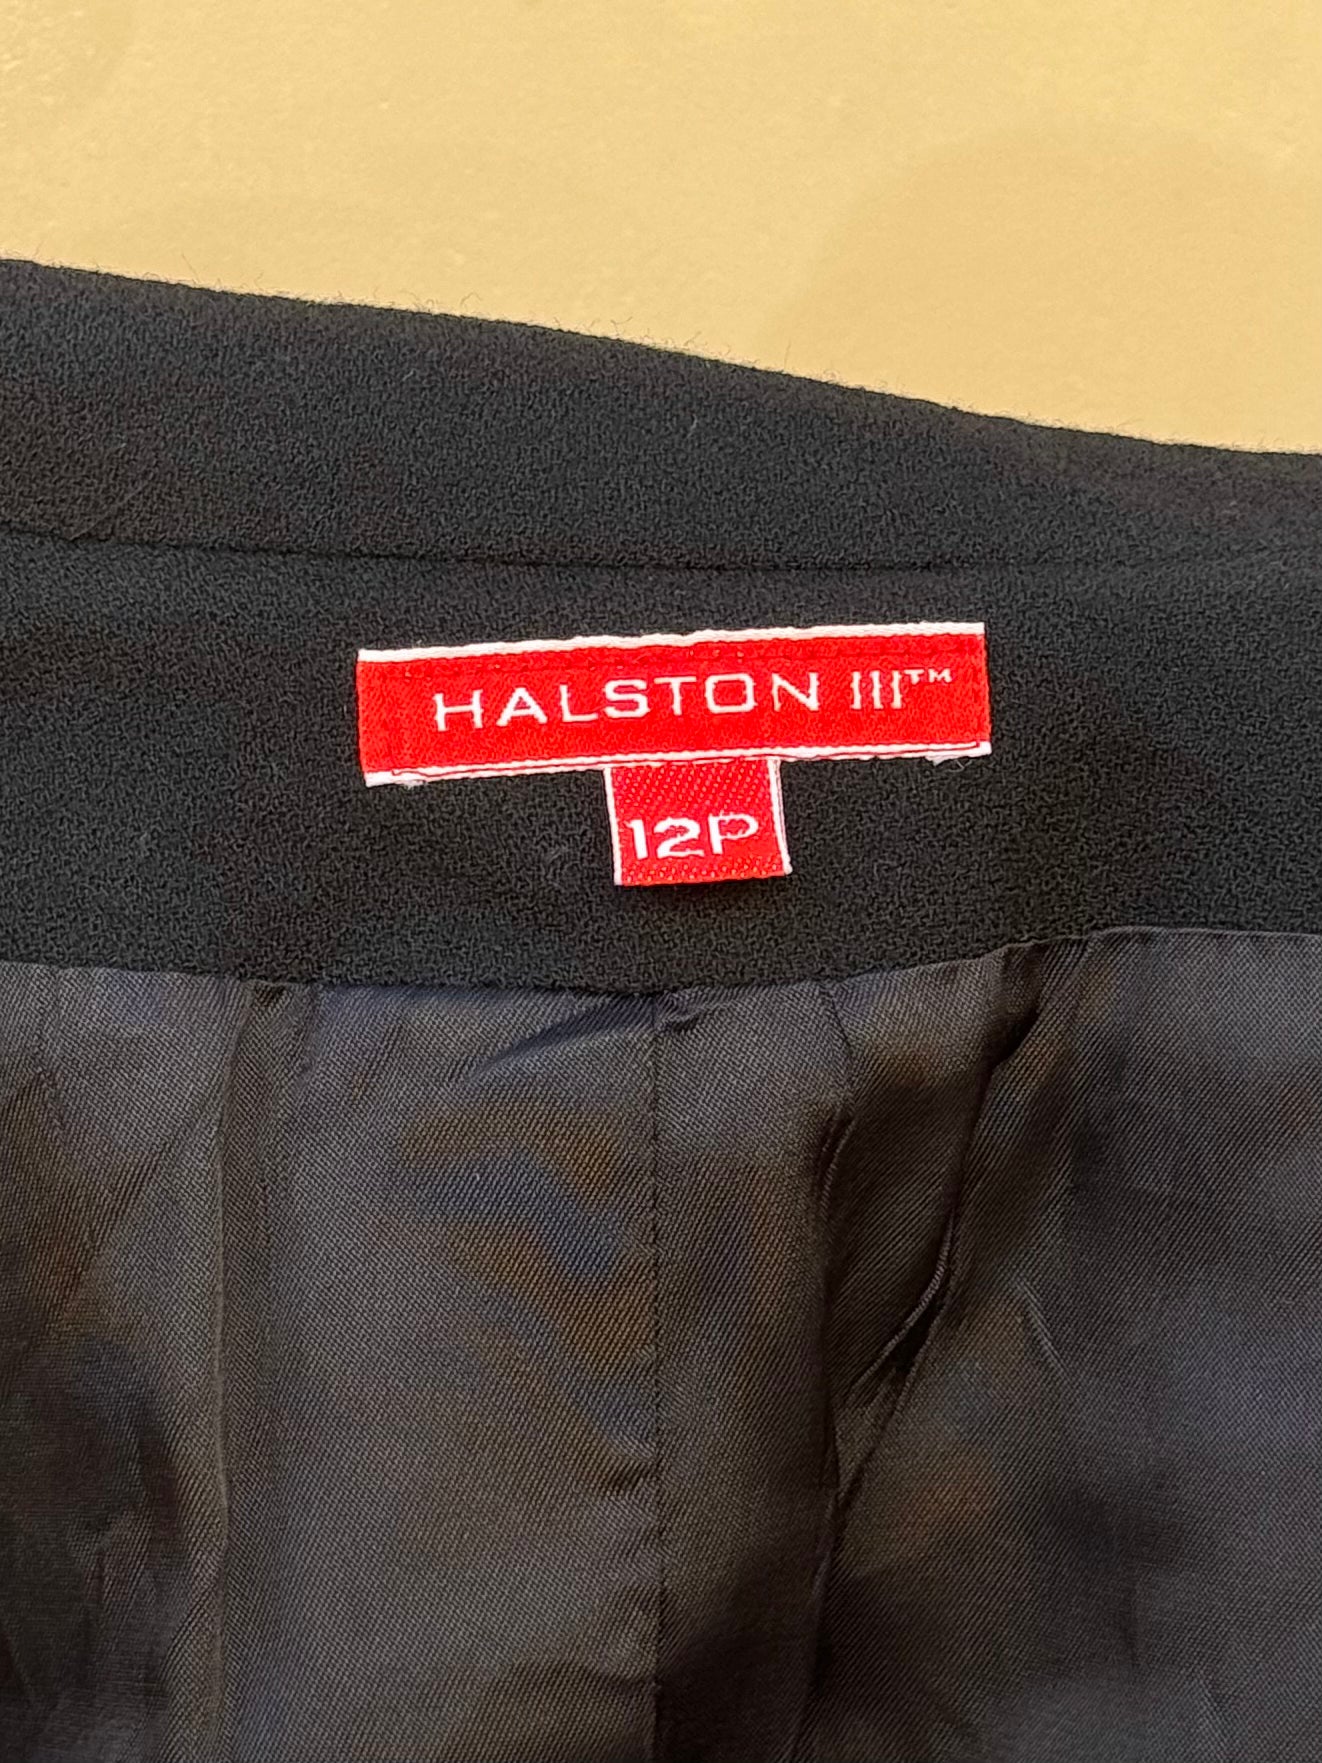 Halston III Vintage Black Cropper Blazer